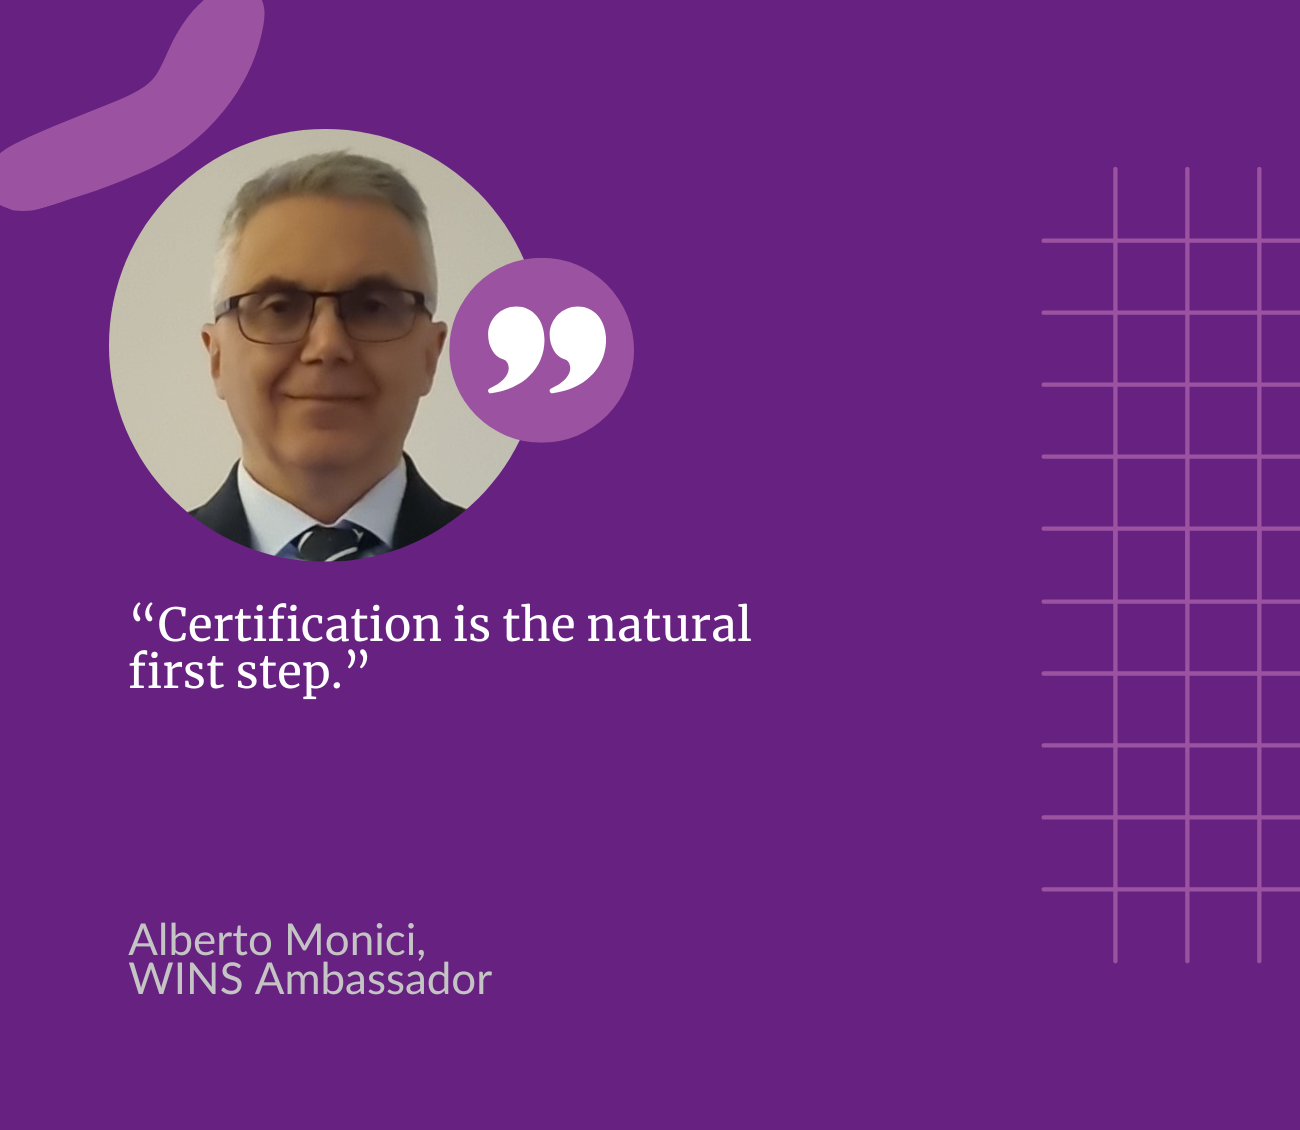 Meet a WINS Ambassador: Alberto Monici